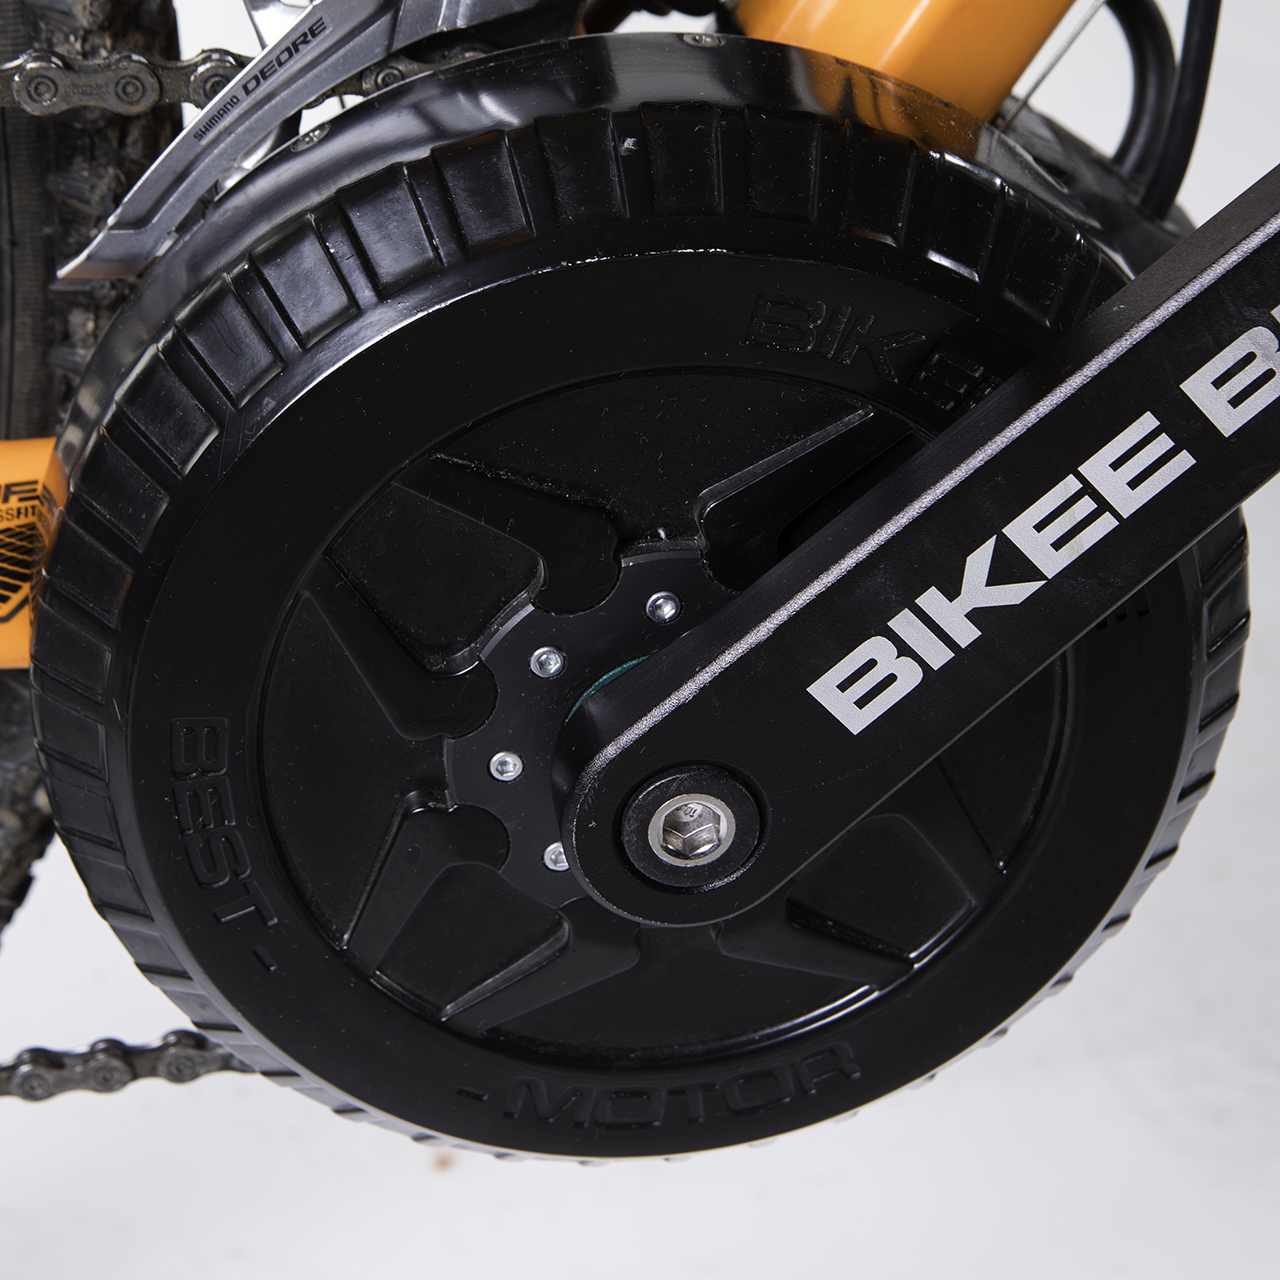 BEST E-BIKE KIT 500W - Bikee Bike: e-bike drive systems fully made in Italy